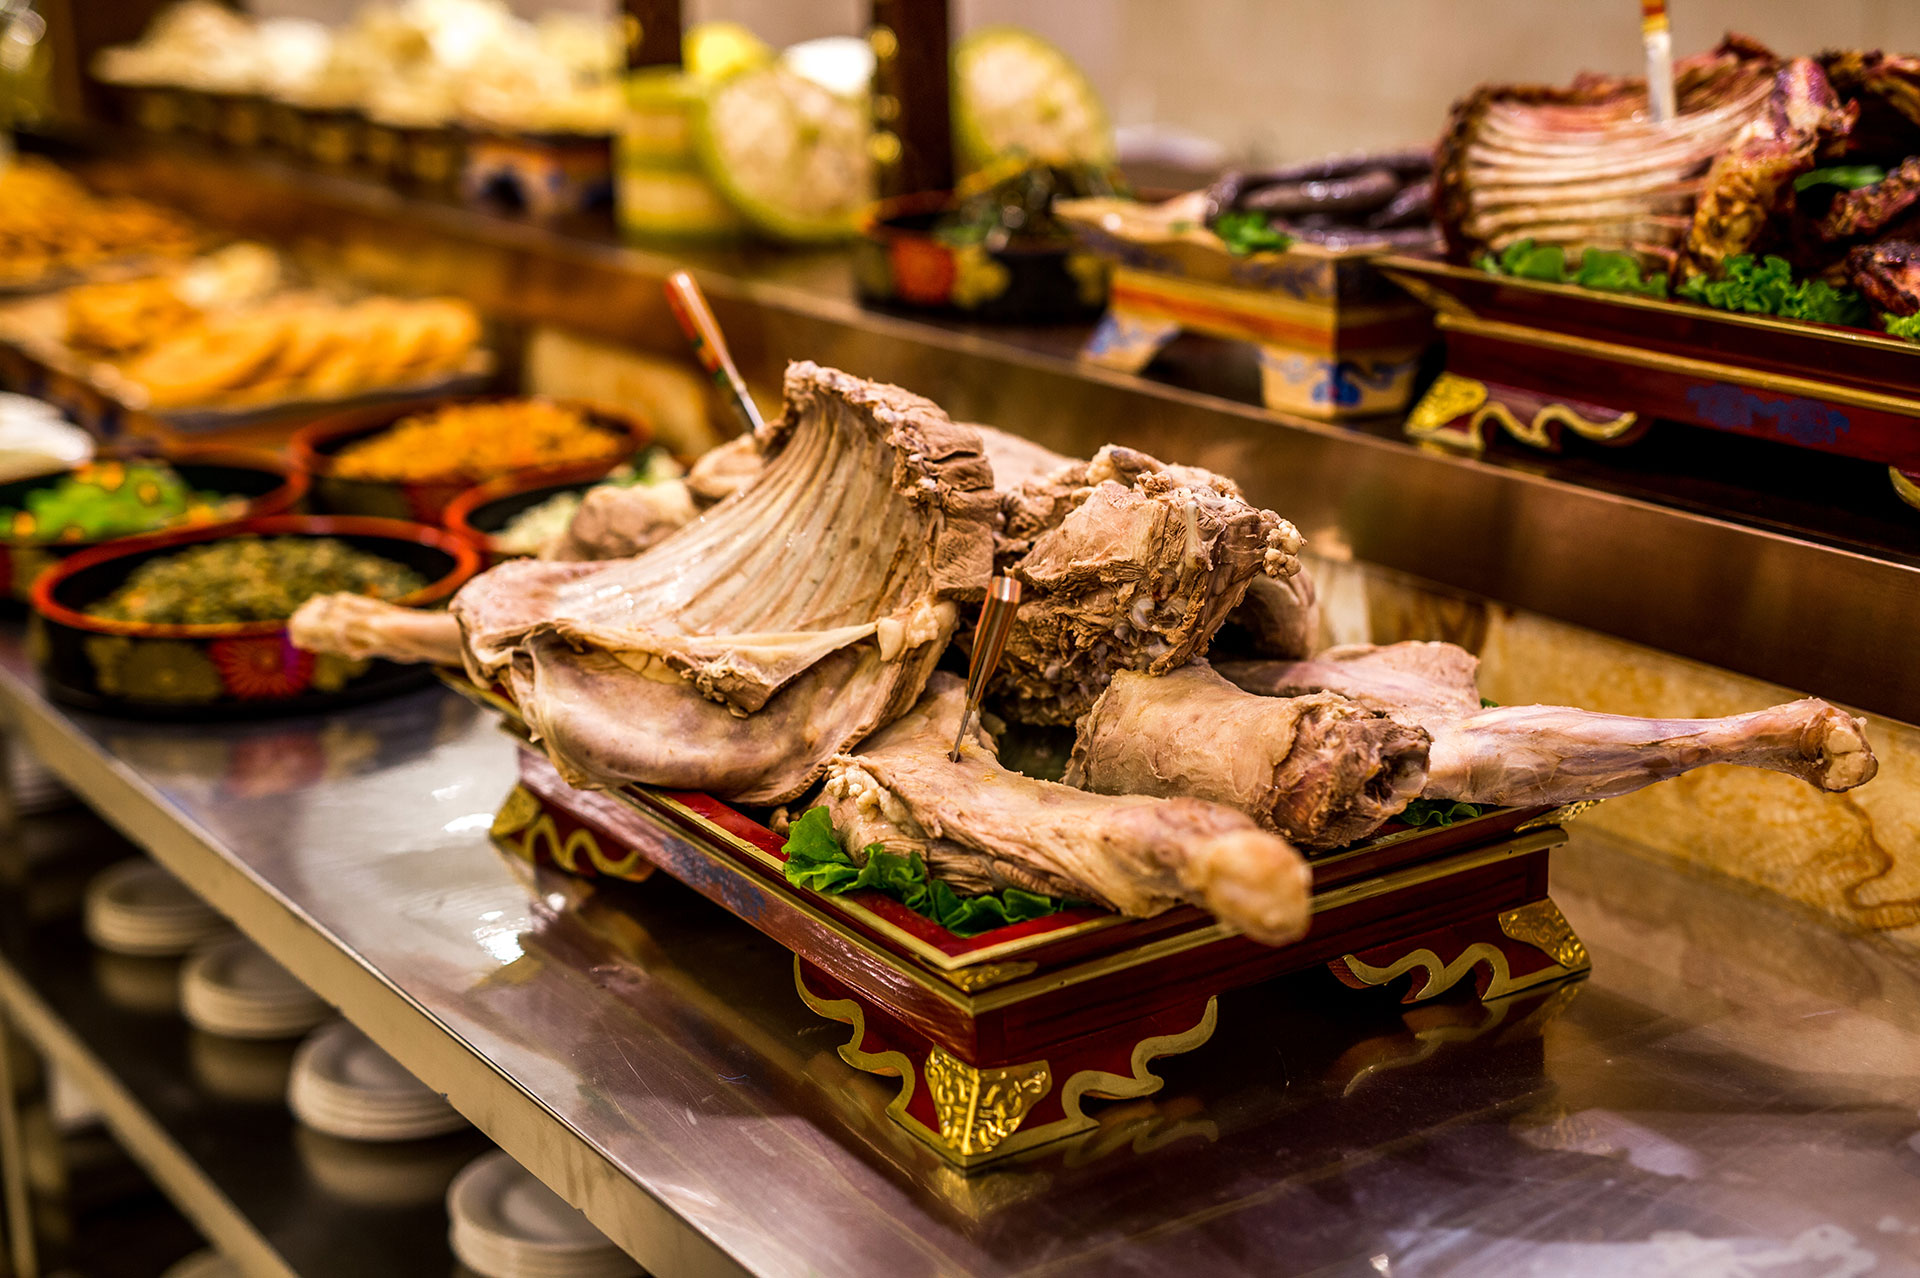 手把肉是内蒙古著名的民族传统菜,因羊肉块大,就餐时须用手撕刀拉而